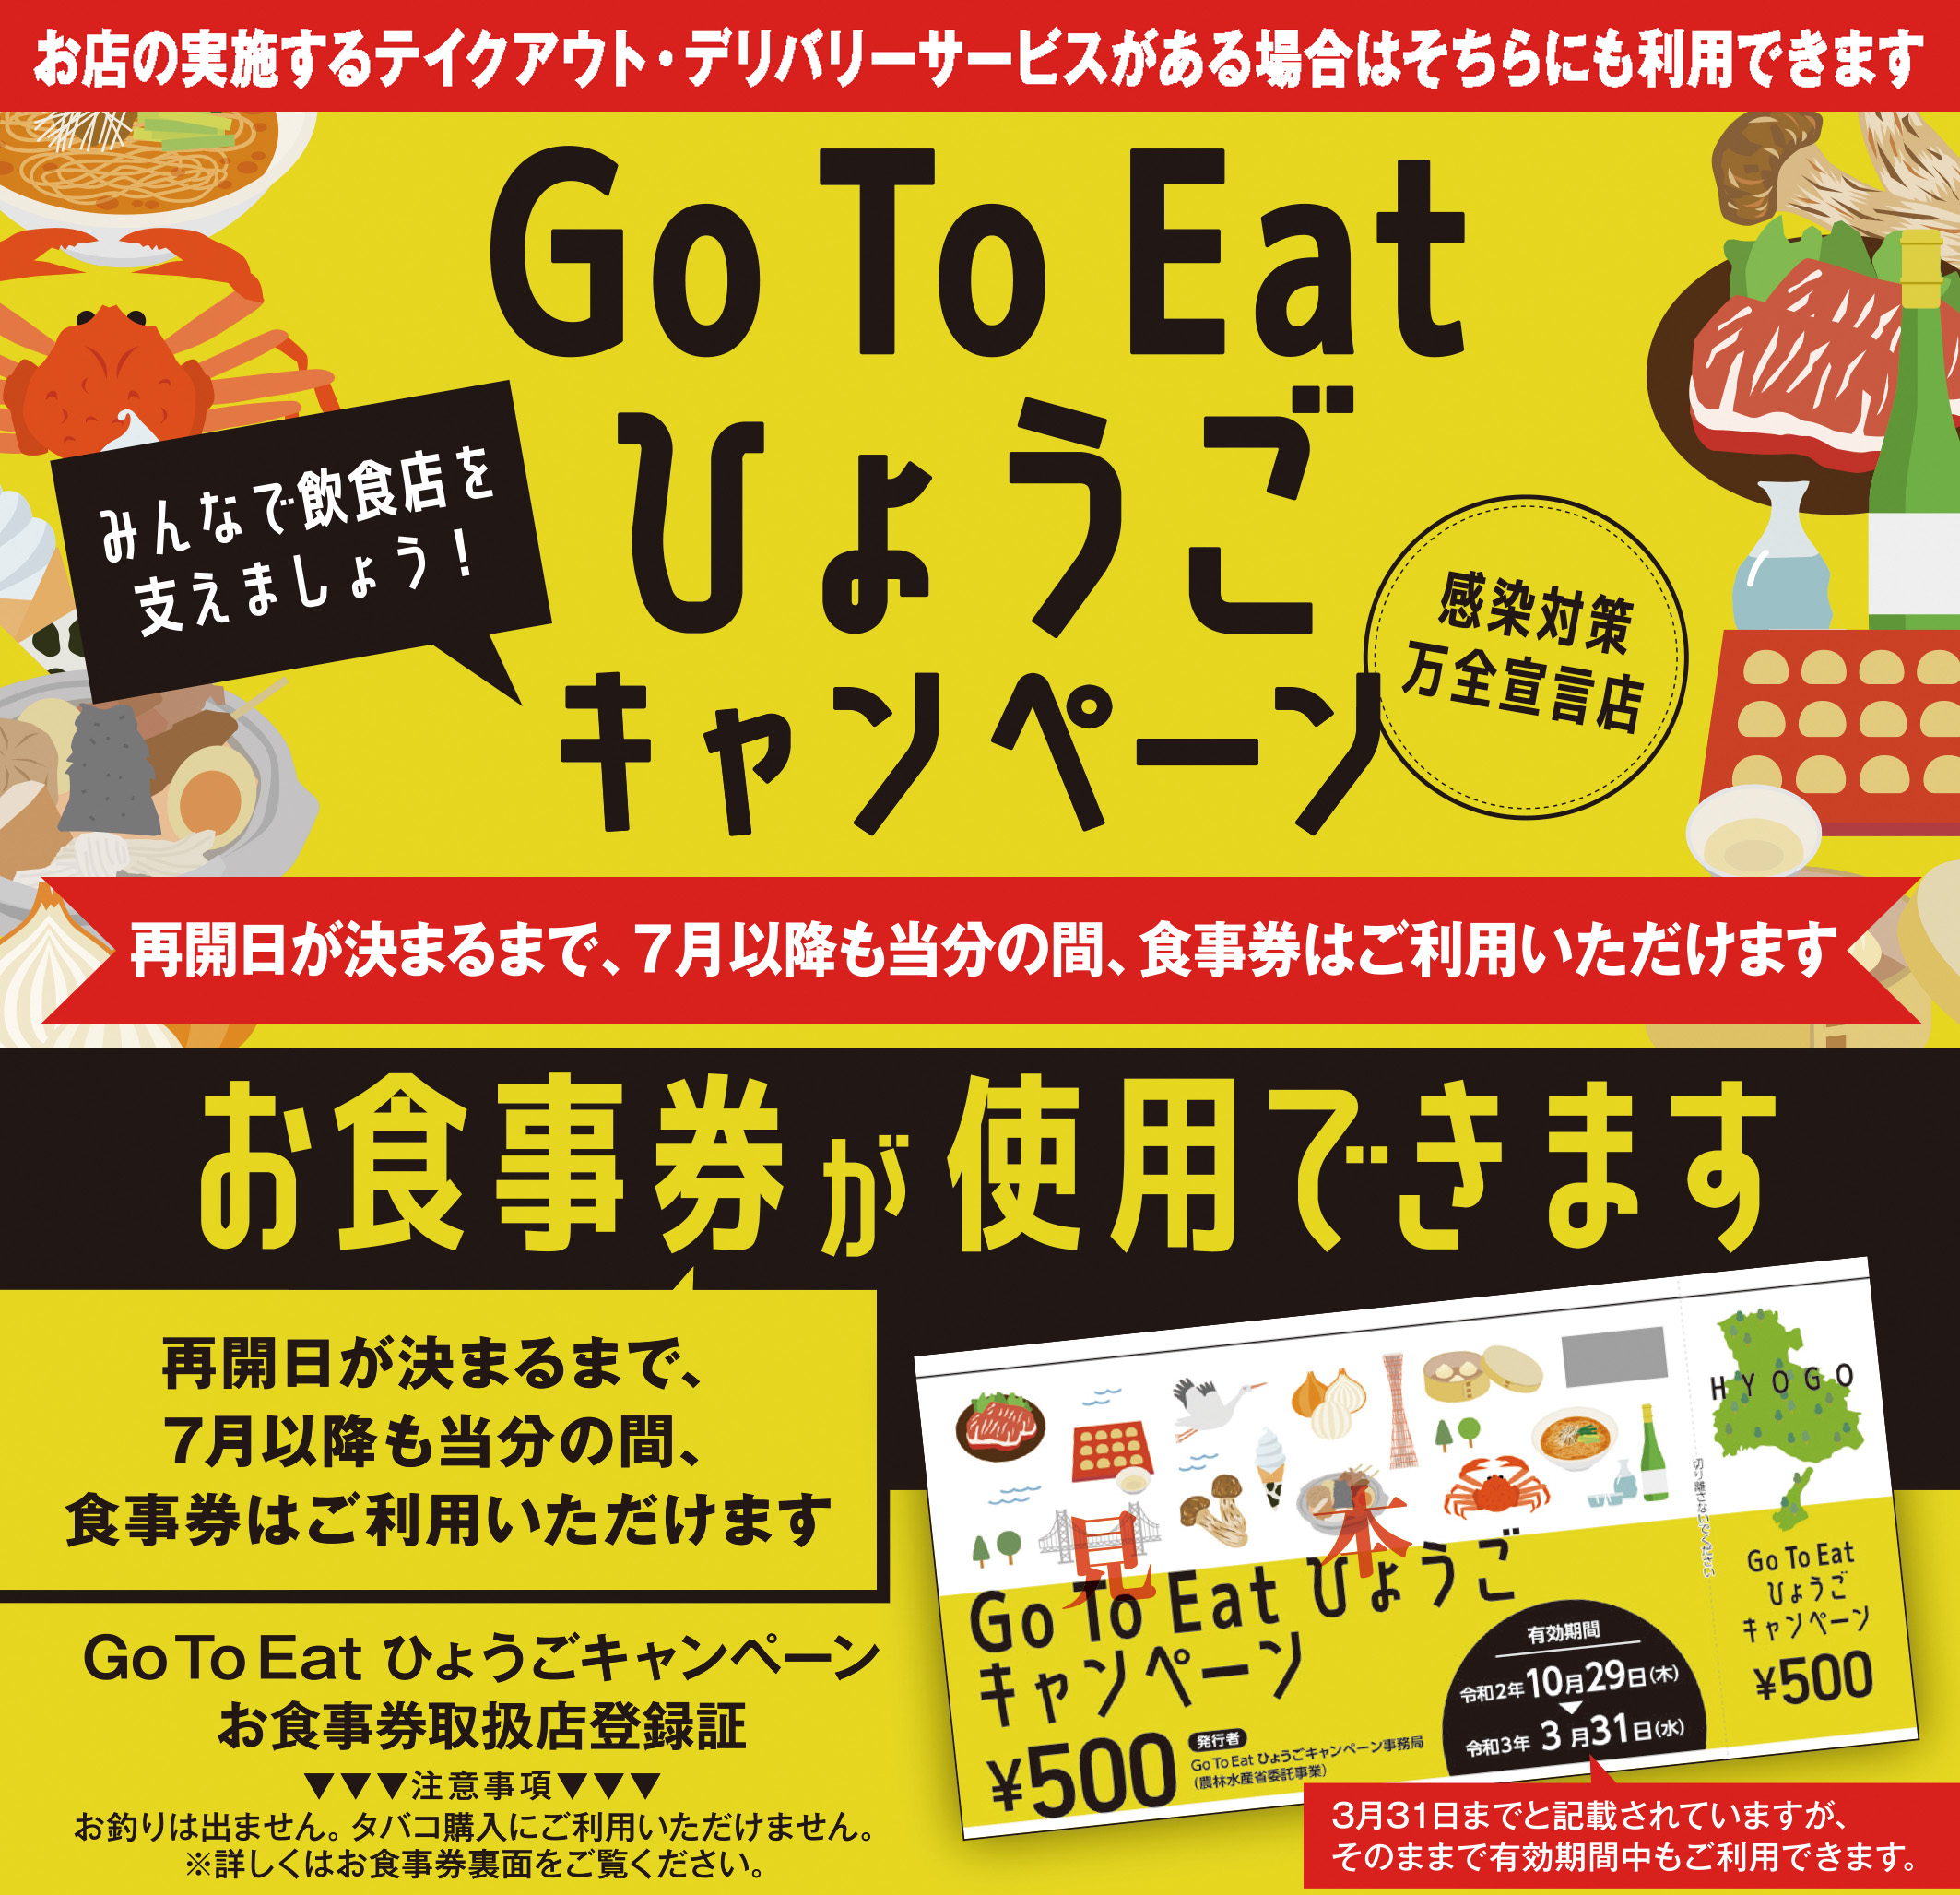 Go To Eat ひょうごキャンペーンについて(3/18更新)